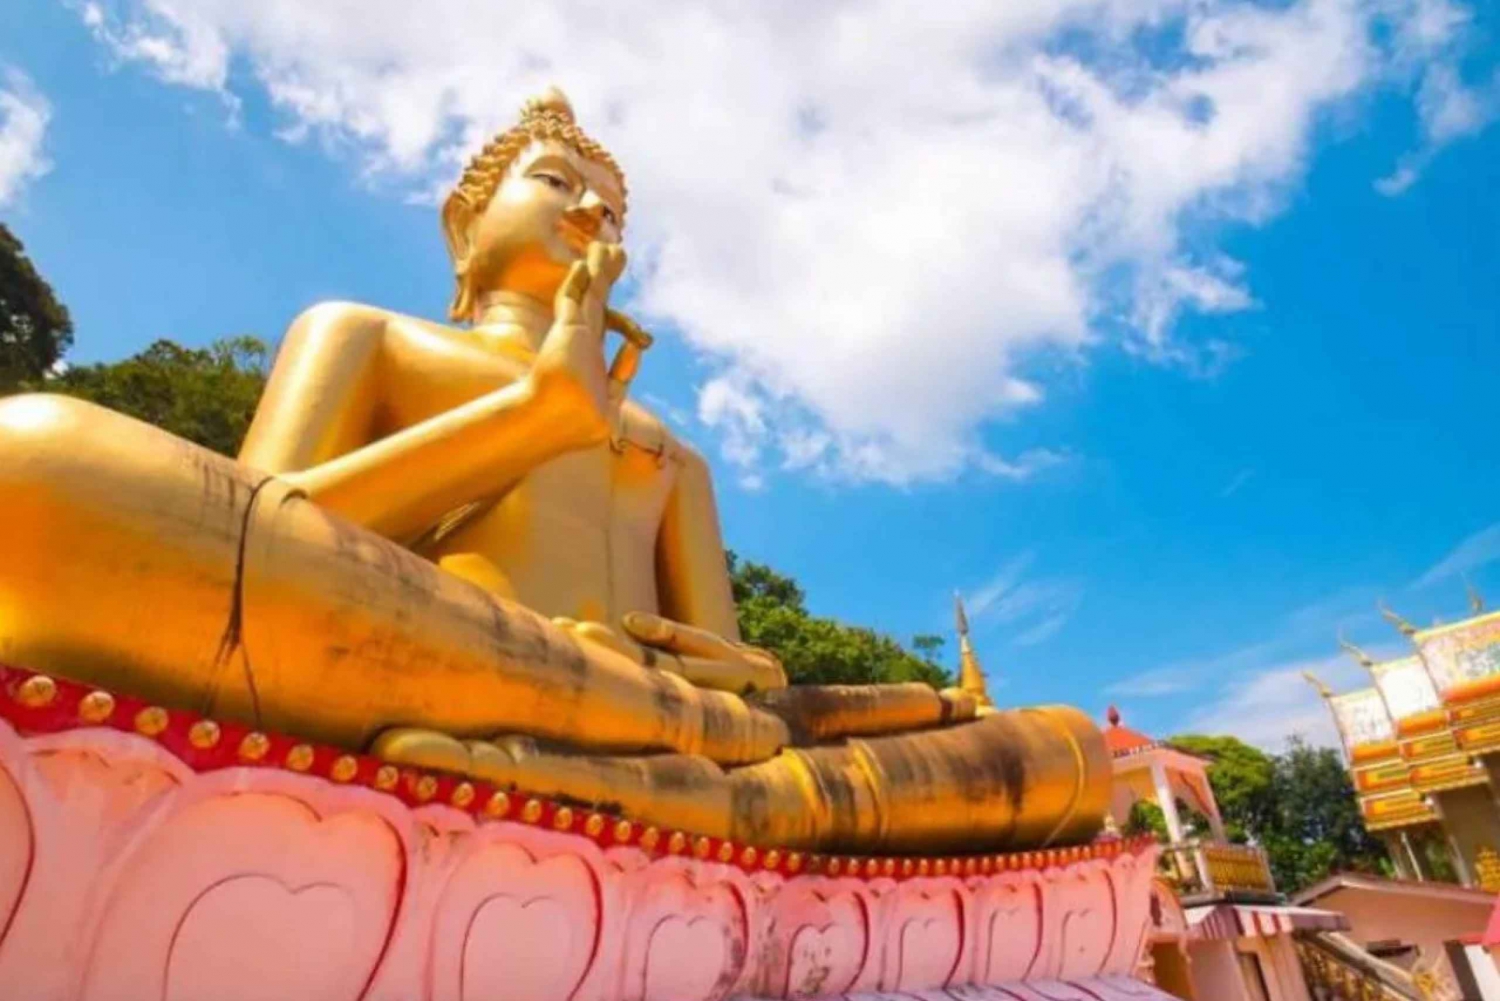 Phuket Temple Trail (Private & All-Inclusive)